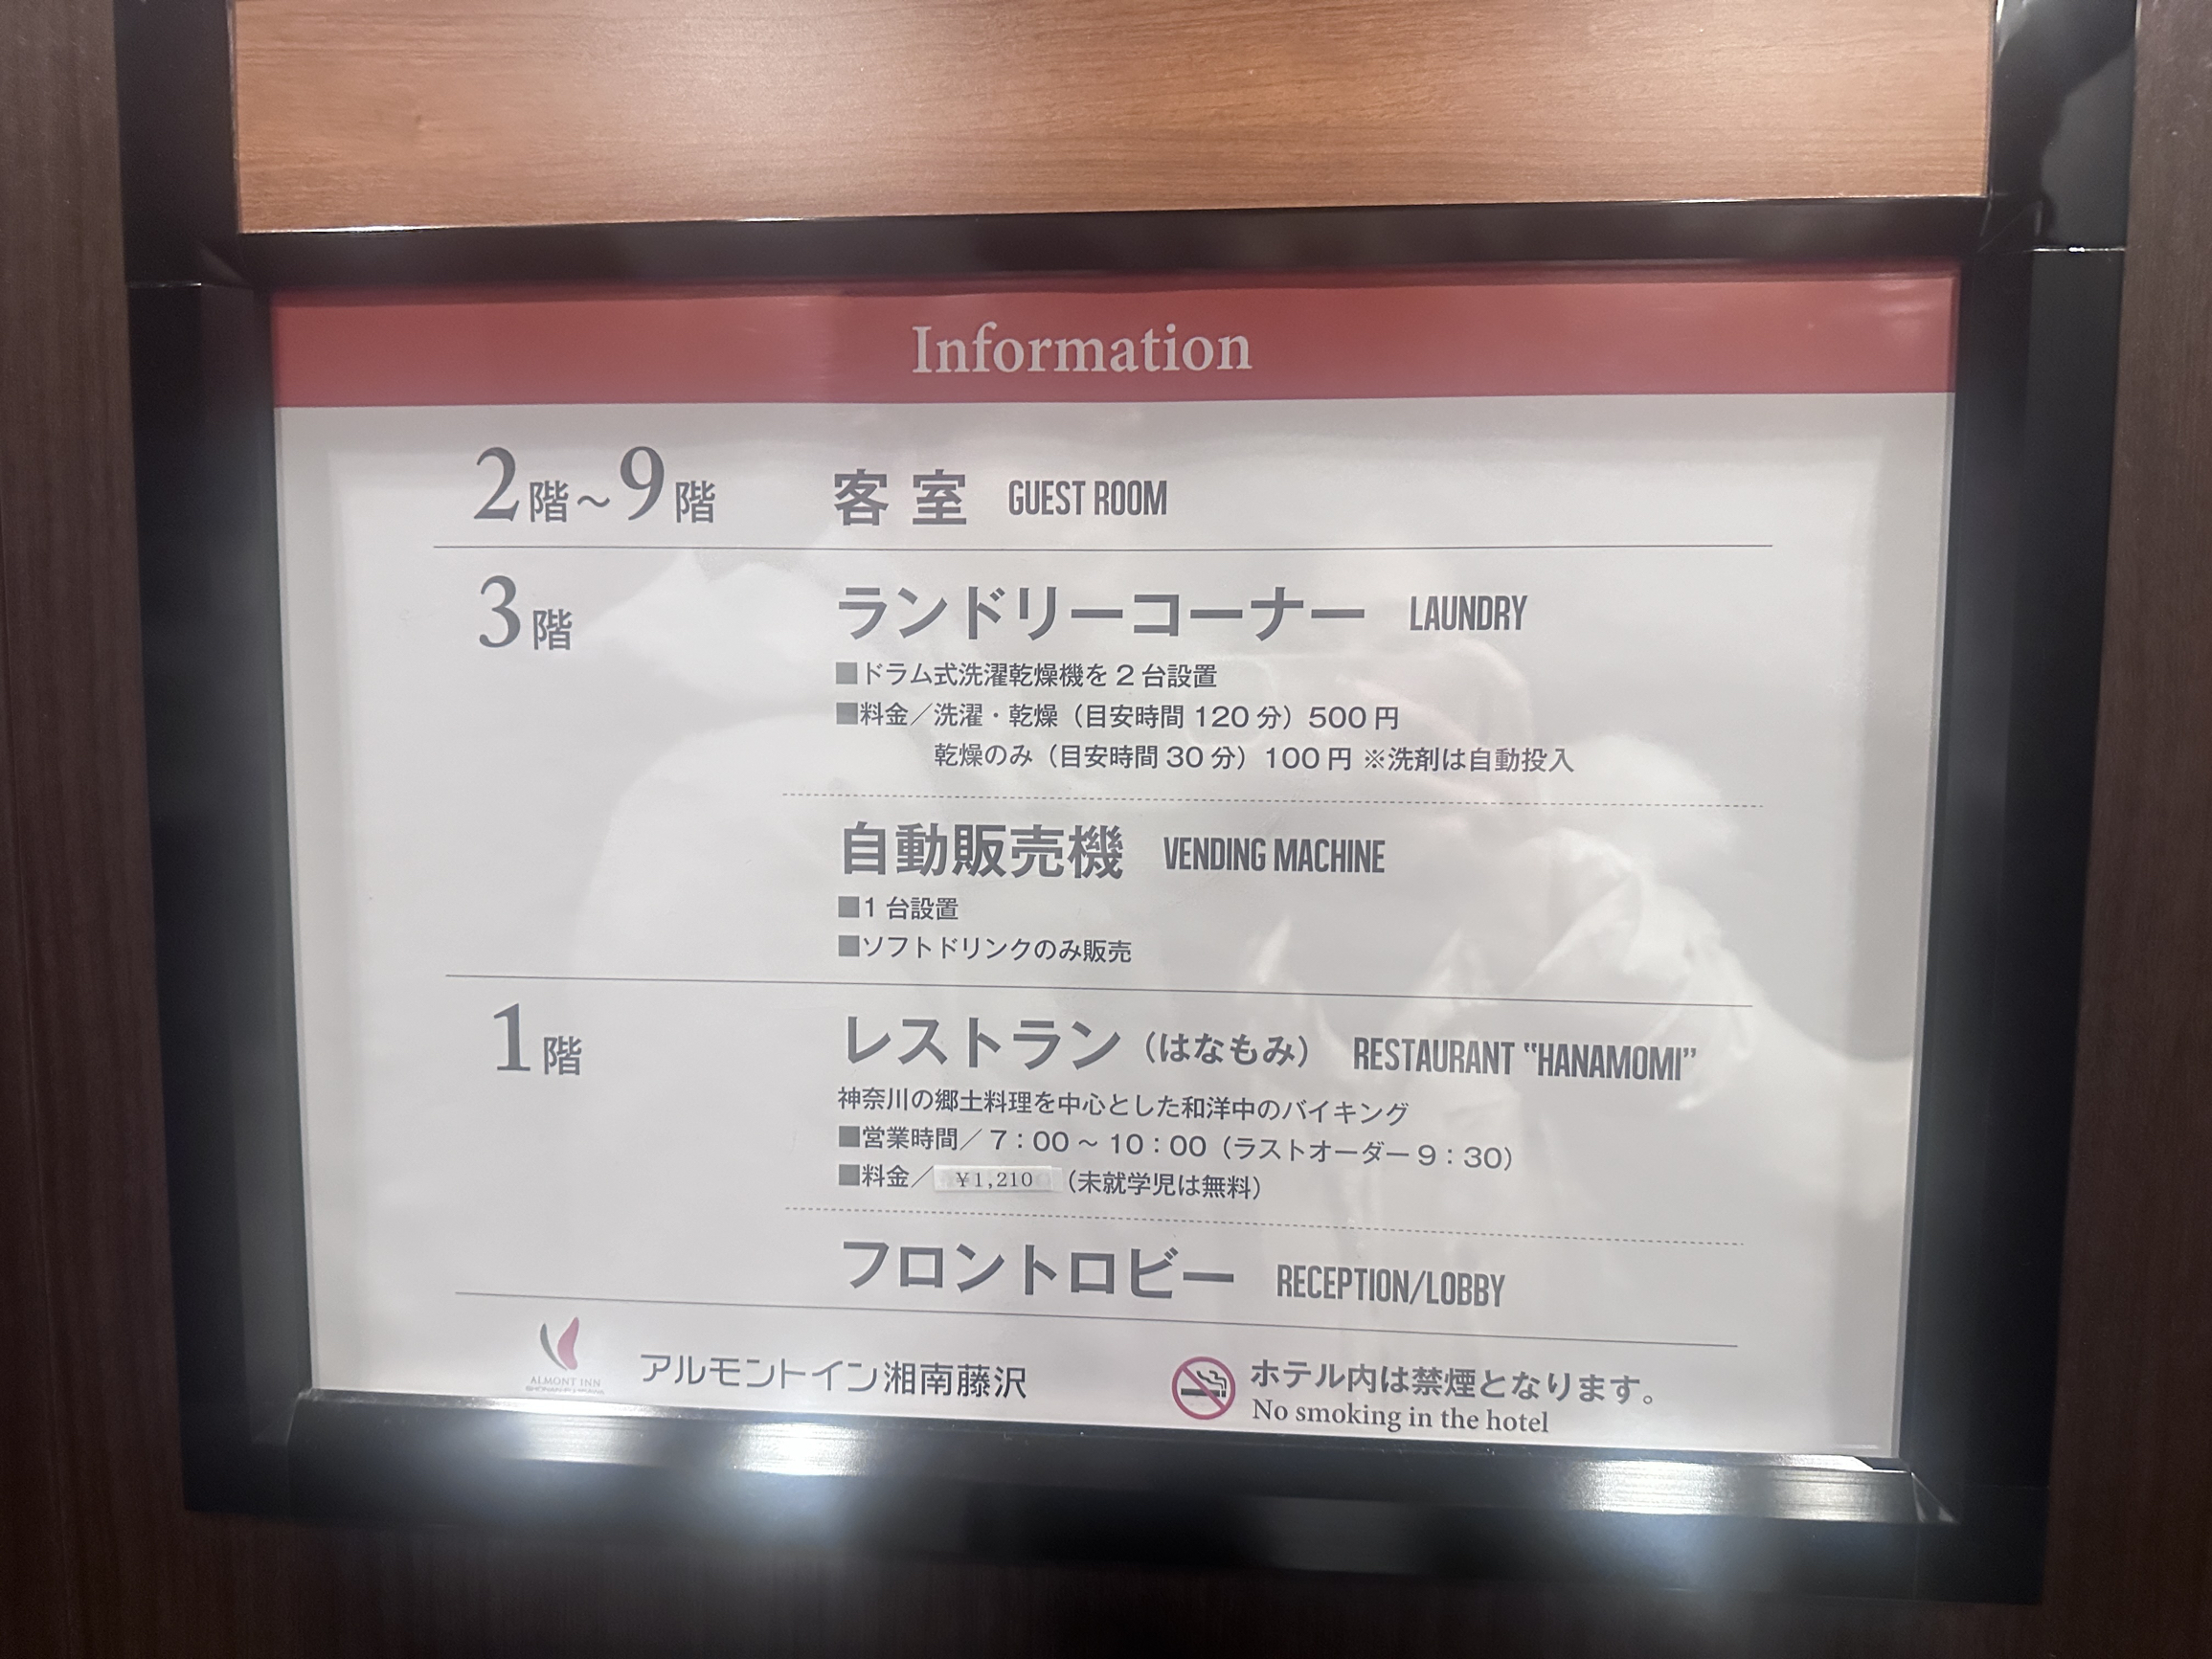 虽然是所谓的四星级，但房间依然非常小，日本酒店的通病吧，价格非常实惠，离藤泽站也非常近，工作人员亲切